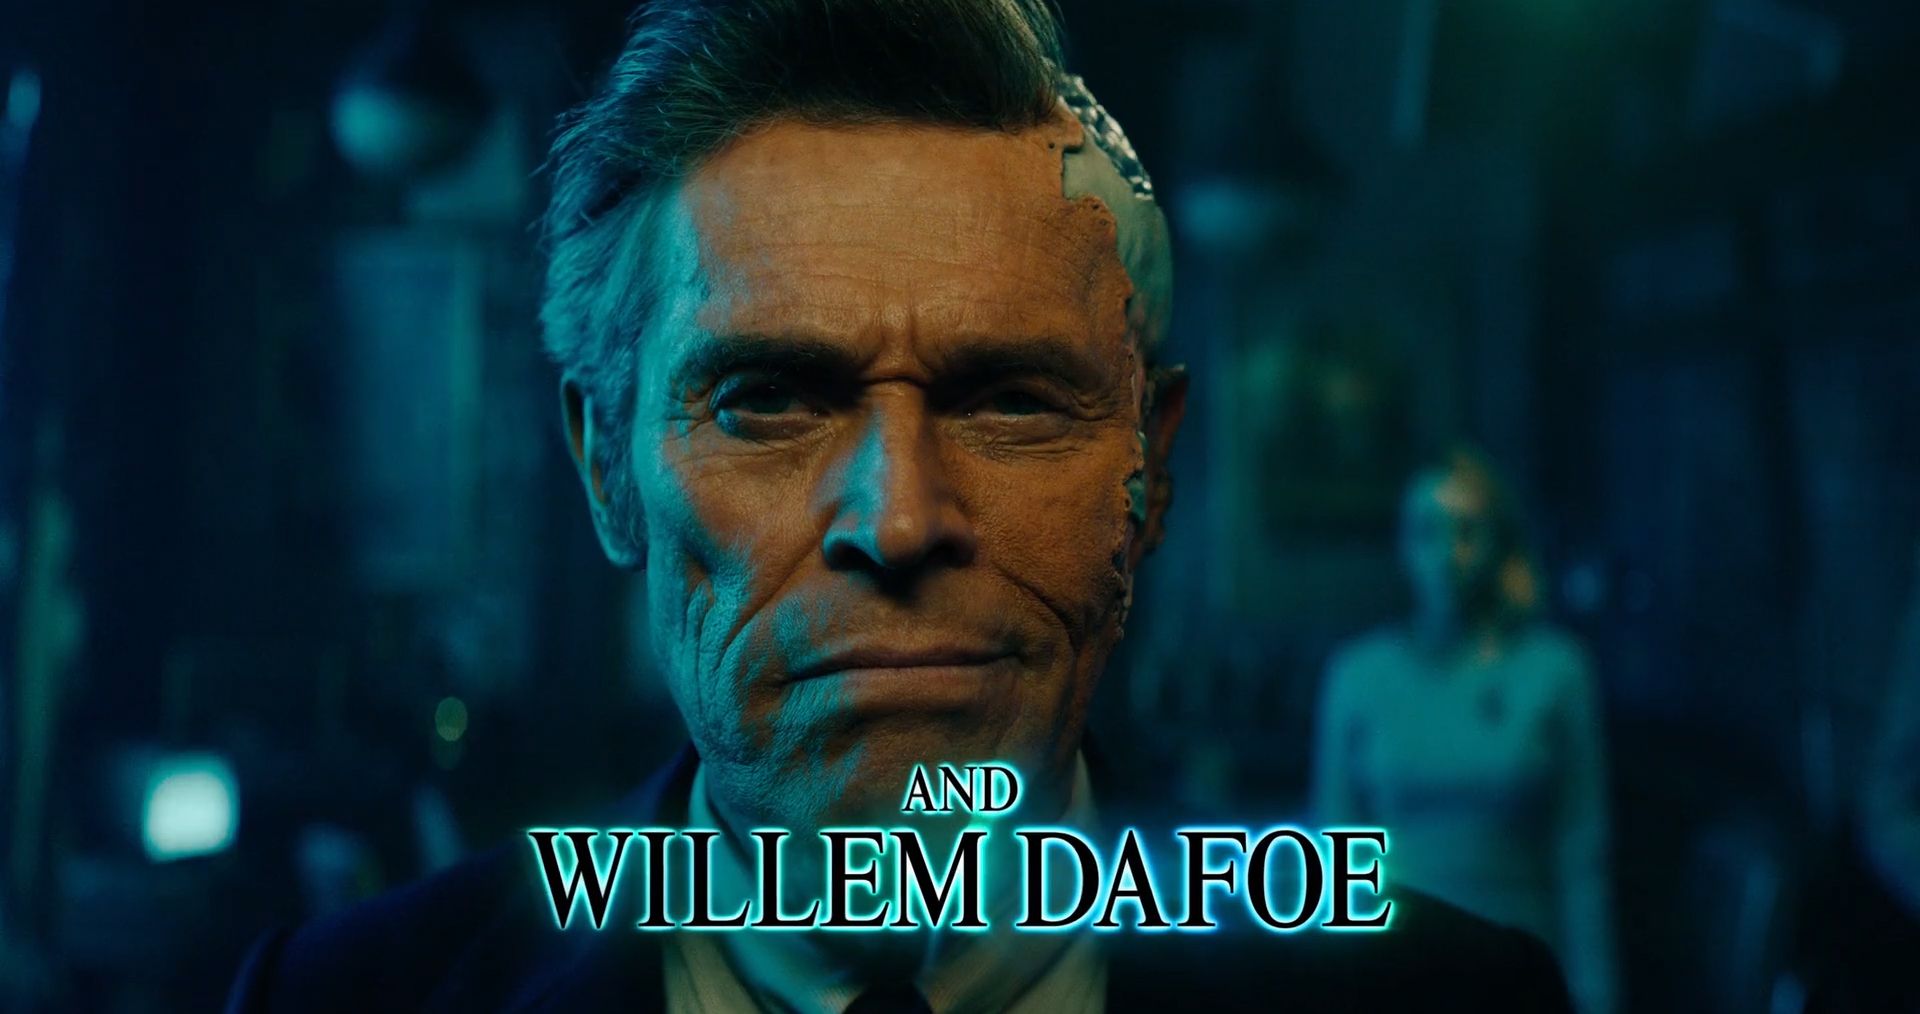 «Битлджус 2» впервые показал мертвого персонажа Уиллема Дефо в новом трейлере